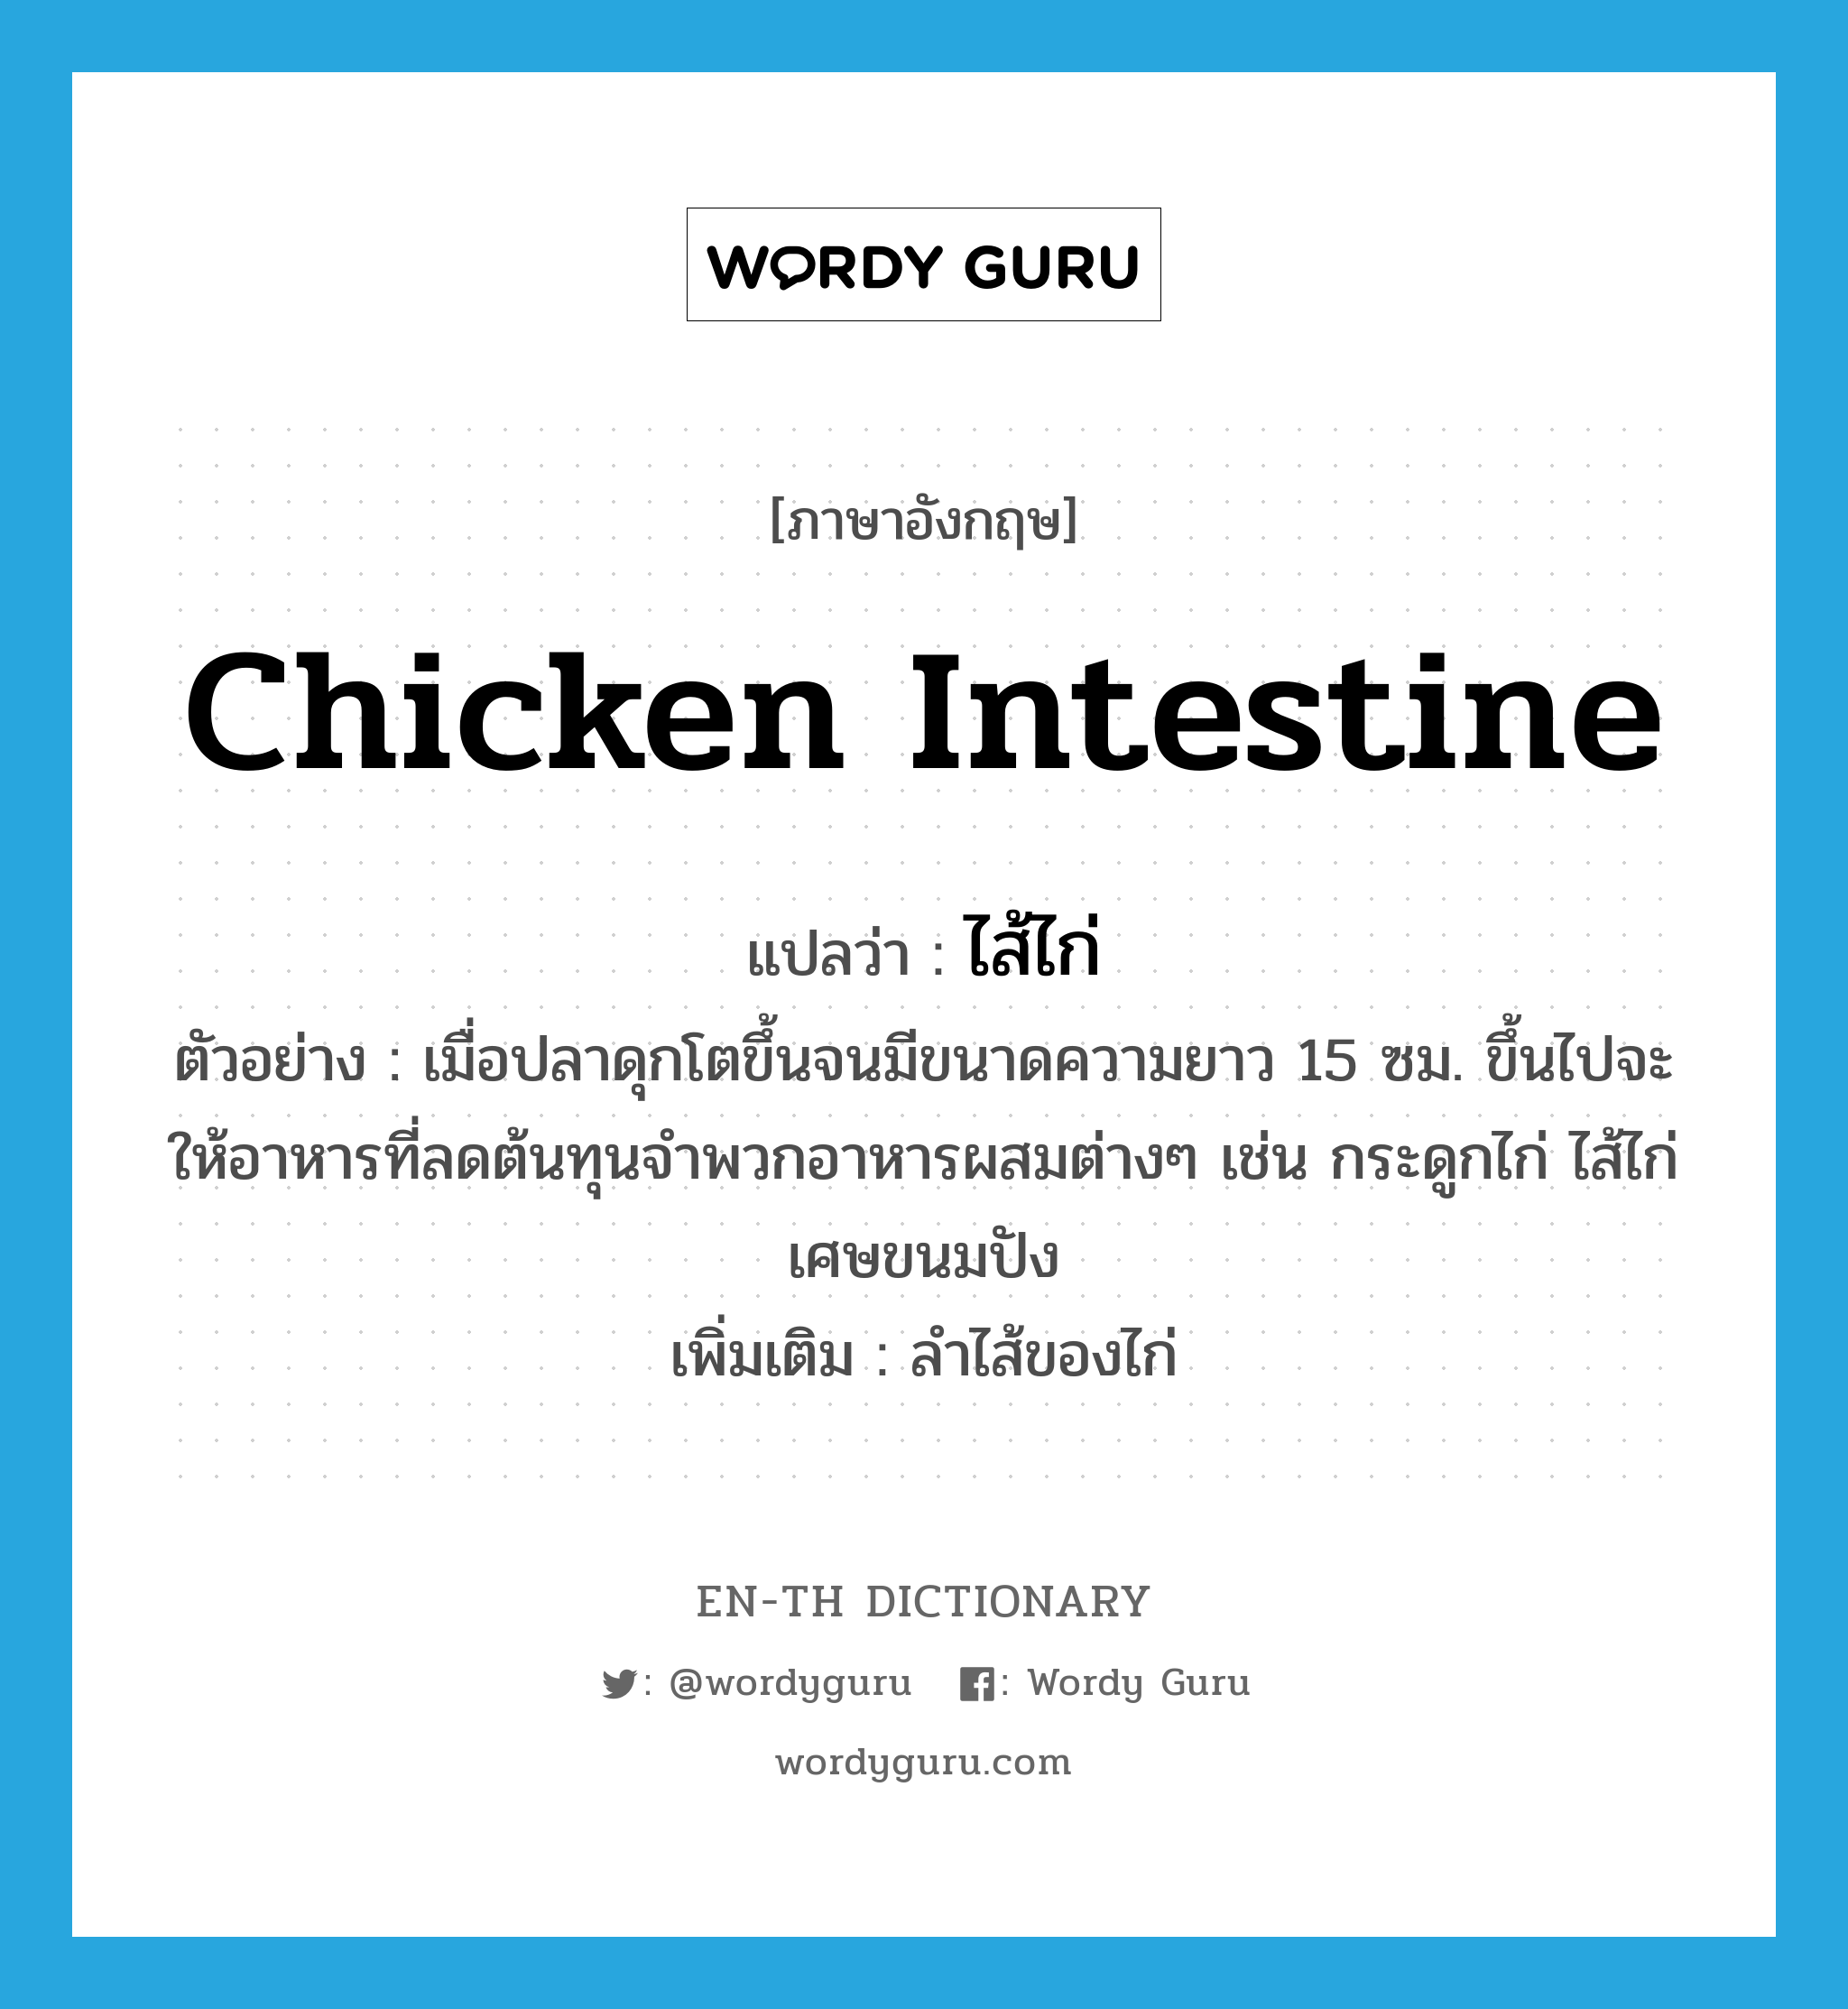 chicken intestine แปลว่า?, คำศัพท์ภาษาอังกฤษ chicken intestine แปลว่า ไส้ไก่ ประเภท N ตัวอย่าง เมื่อปลาดุกโตขึ้นจนมีขนาดความยาว 15 ซม. ขึ้นไปจะให้อาหารที่ลดต้นทุนจำพวกอาหารผสมต่างๆ เช่น กระดูกไก่ ไส้ไก่ เศษขนมปัง เพิ่มเติม ลำไส้ของไก่ หมวด N